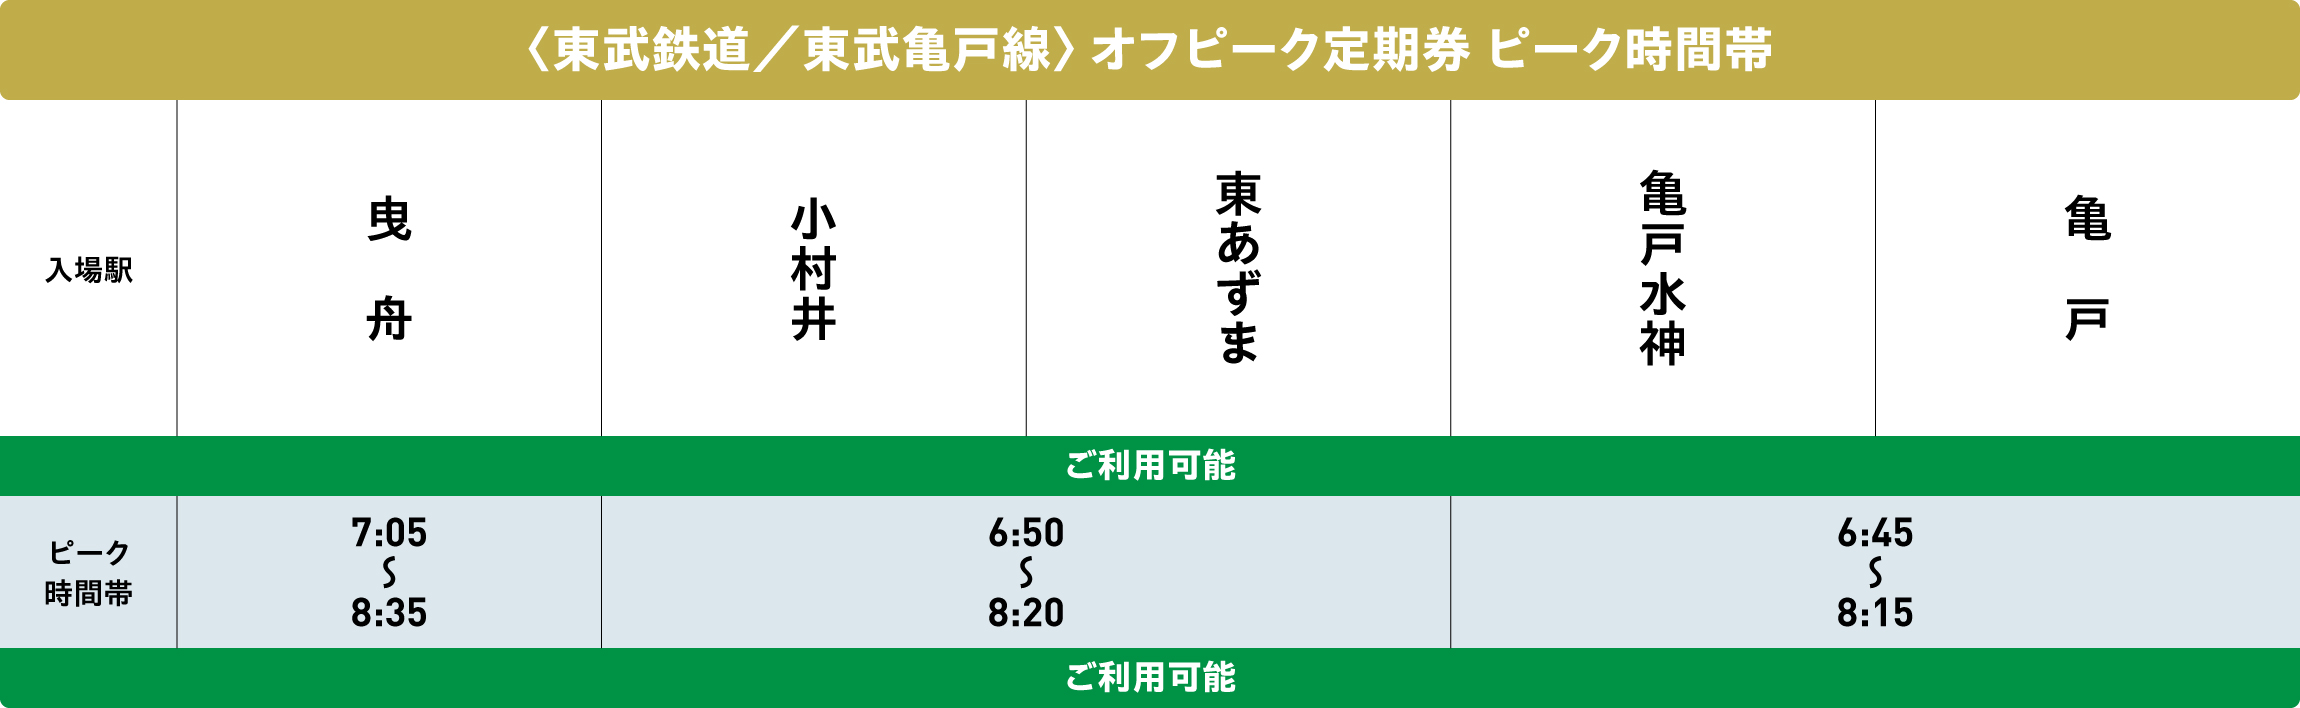 東武亀戸線オフピークポイントサービス対象時間帯